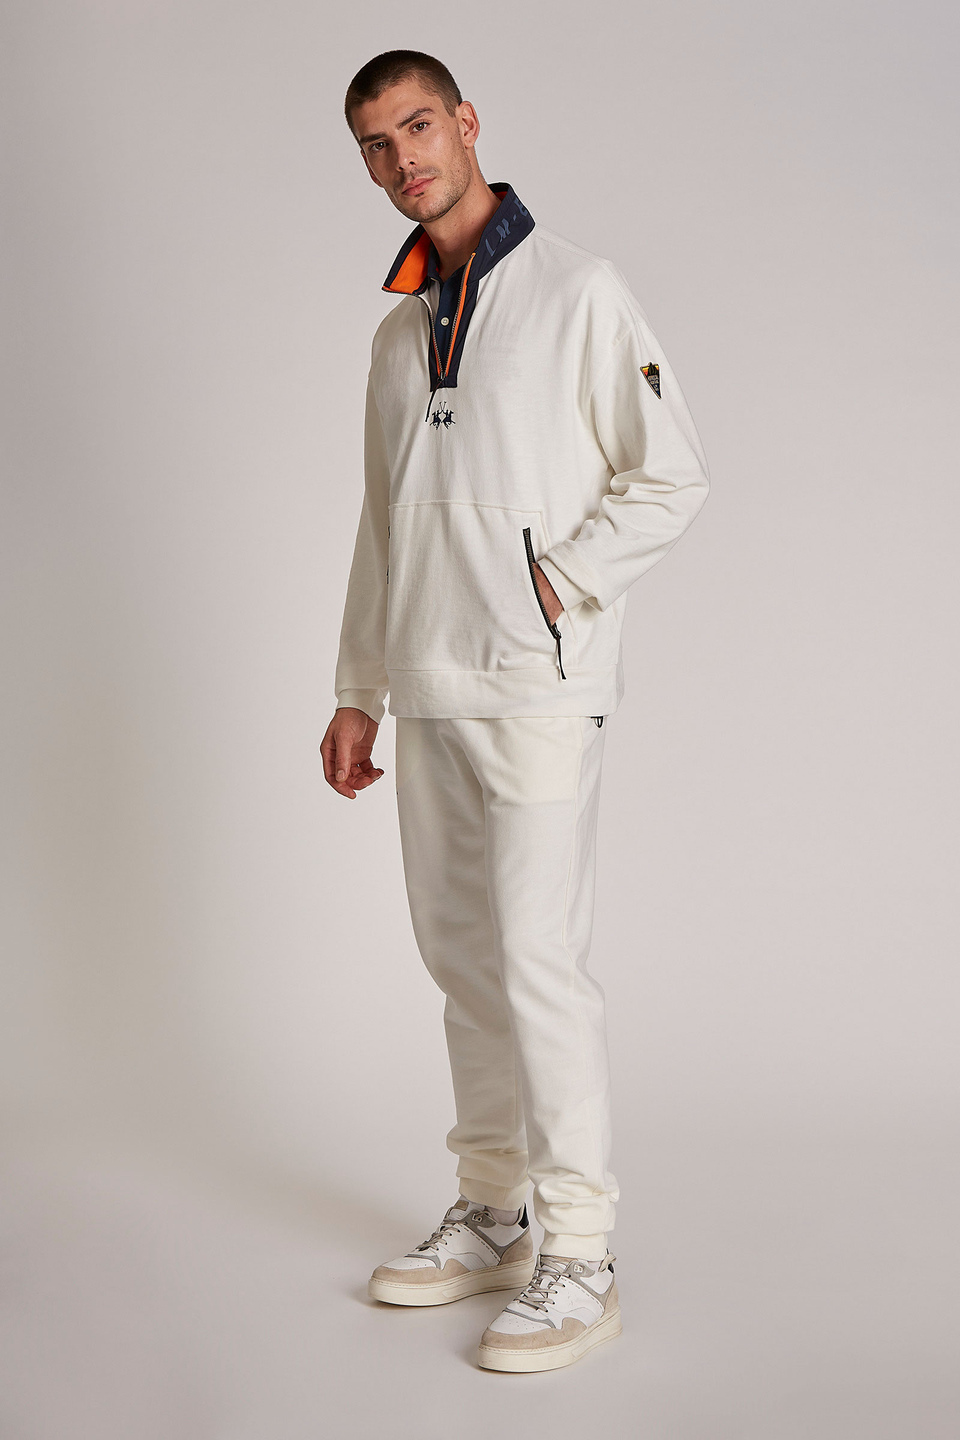 Sudadera de hombre de algodón 100 % con cierre de cremallera, modelo holgado - La Martina - Official Online Shop